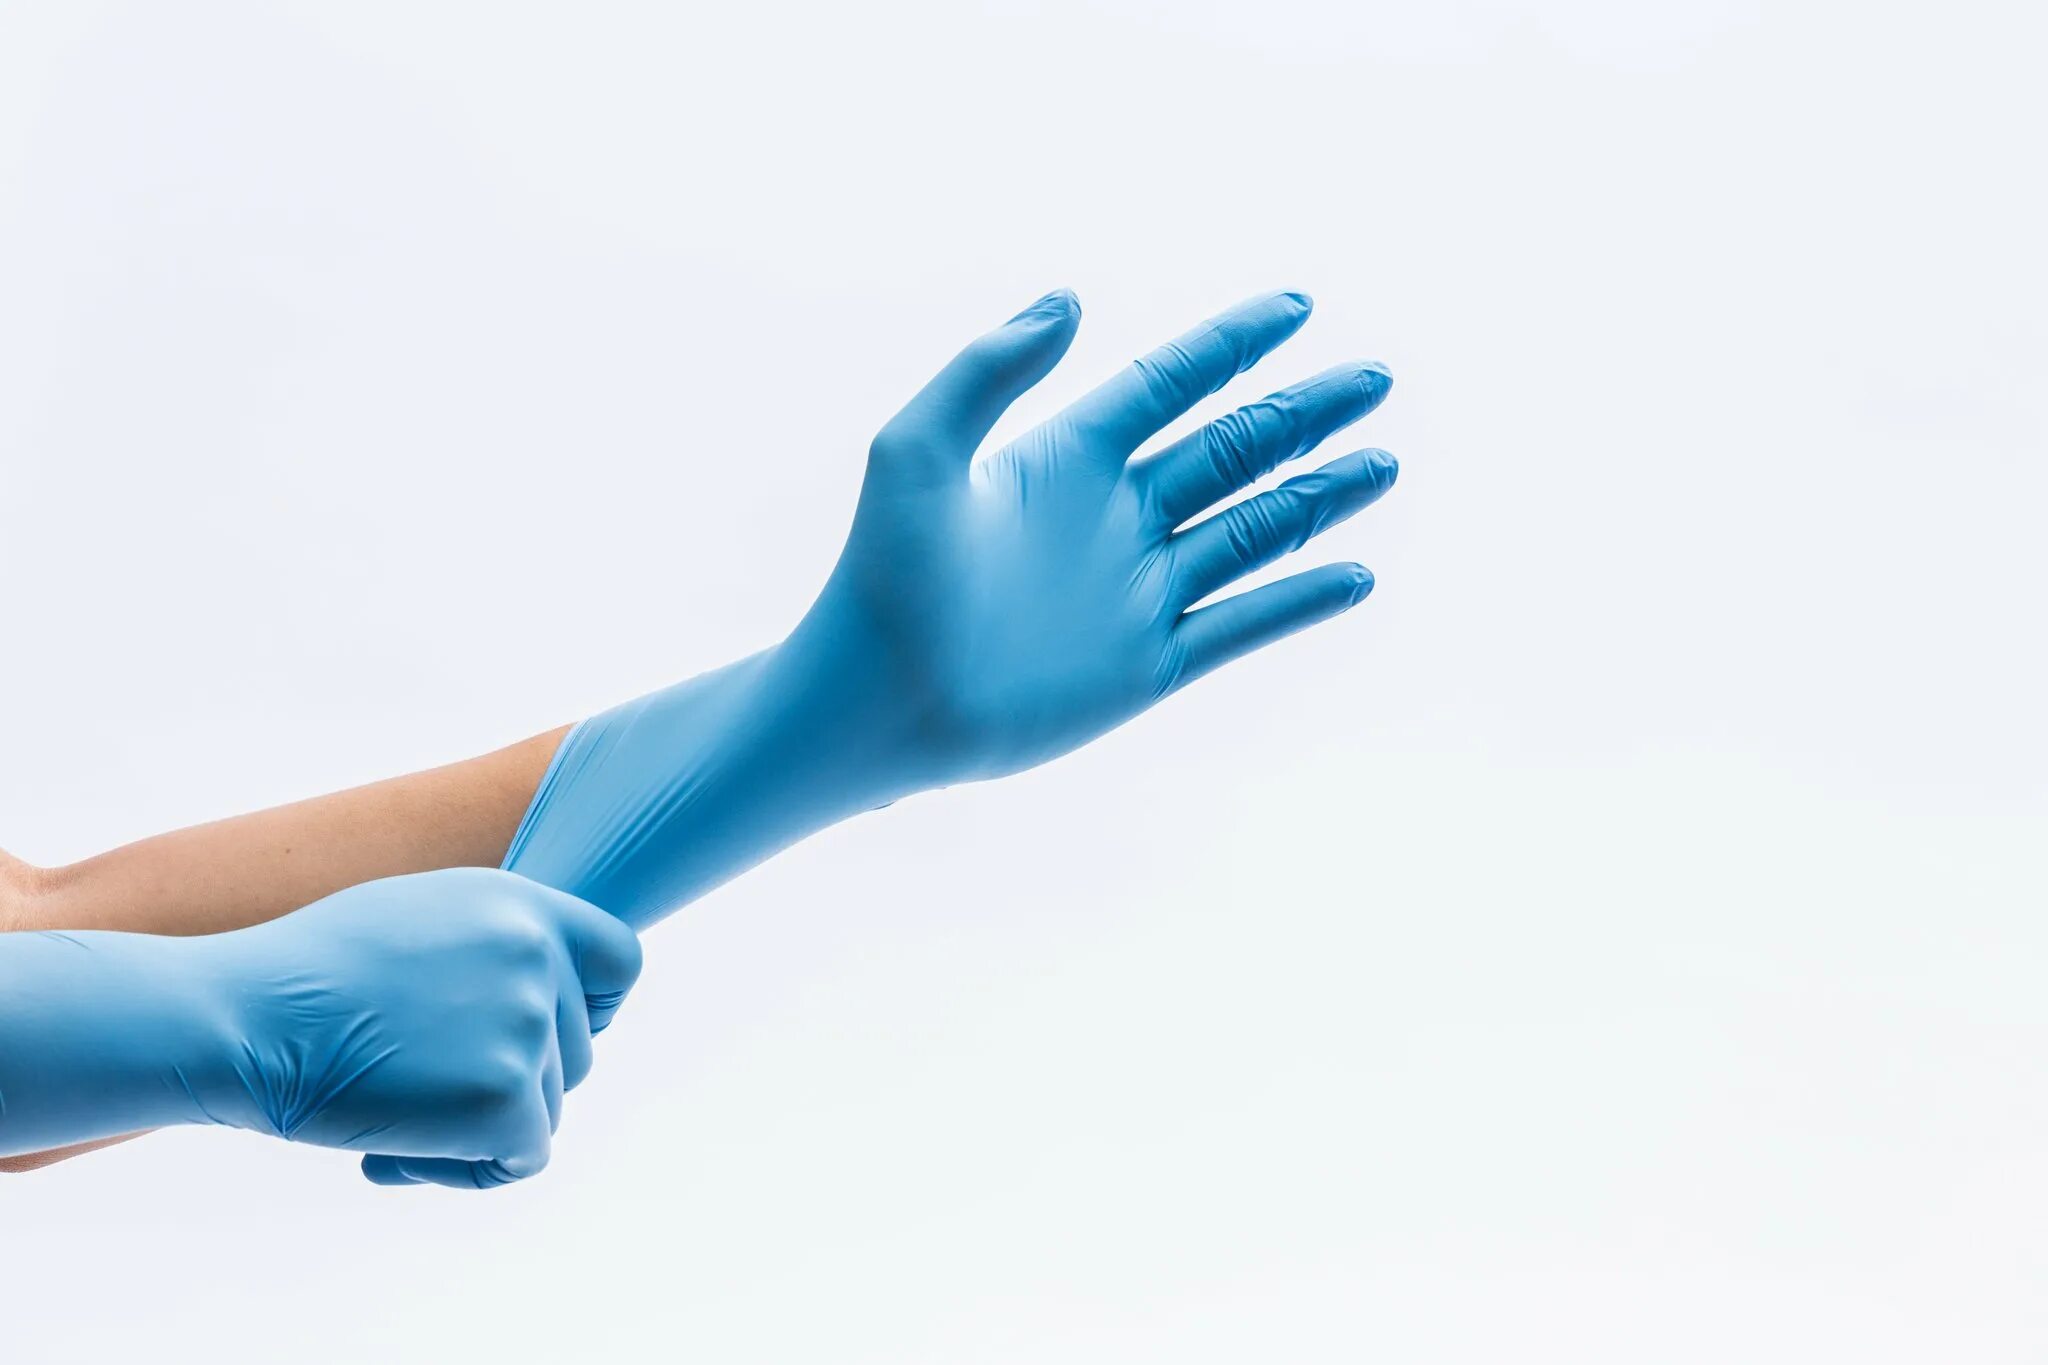 Руки в перчатках. Перчатки медицинские. Перчатки latex Gloves. Перчатки на руках медицинские. Резиновые перчатки после использования